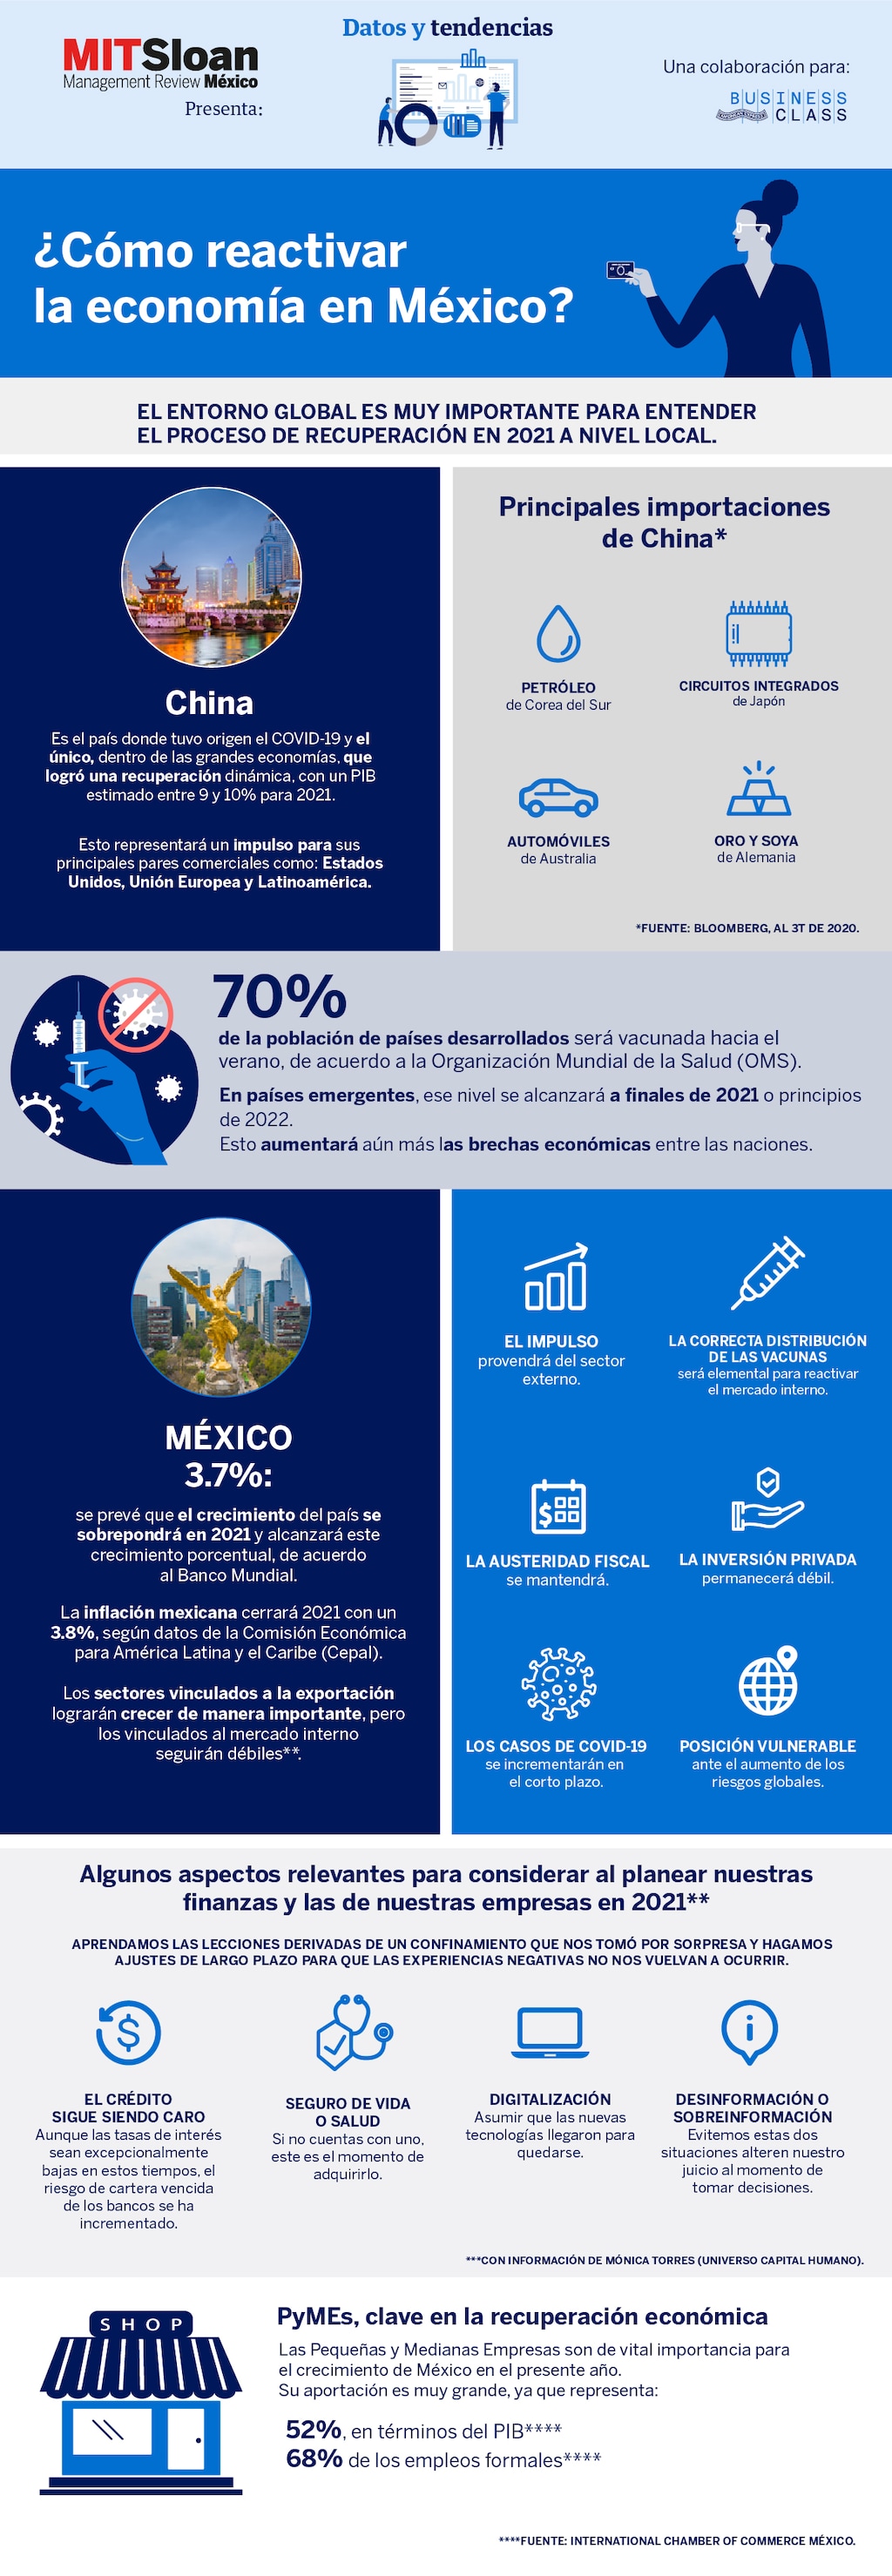 ¿Cómo reactivar la economía en México?